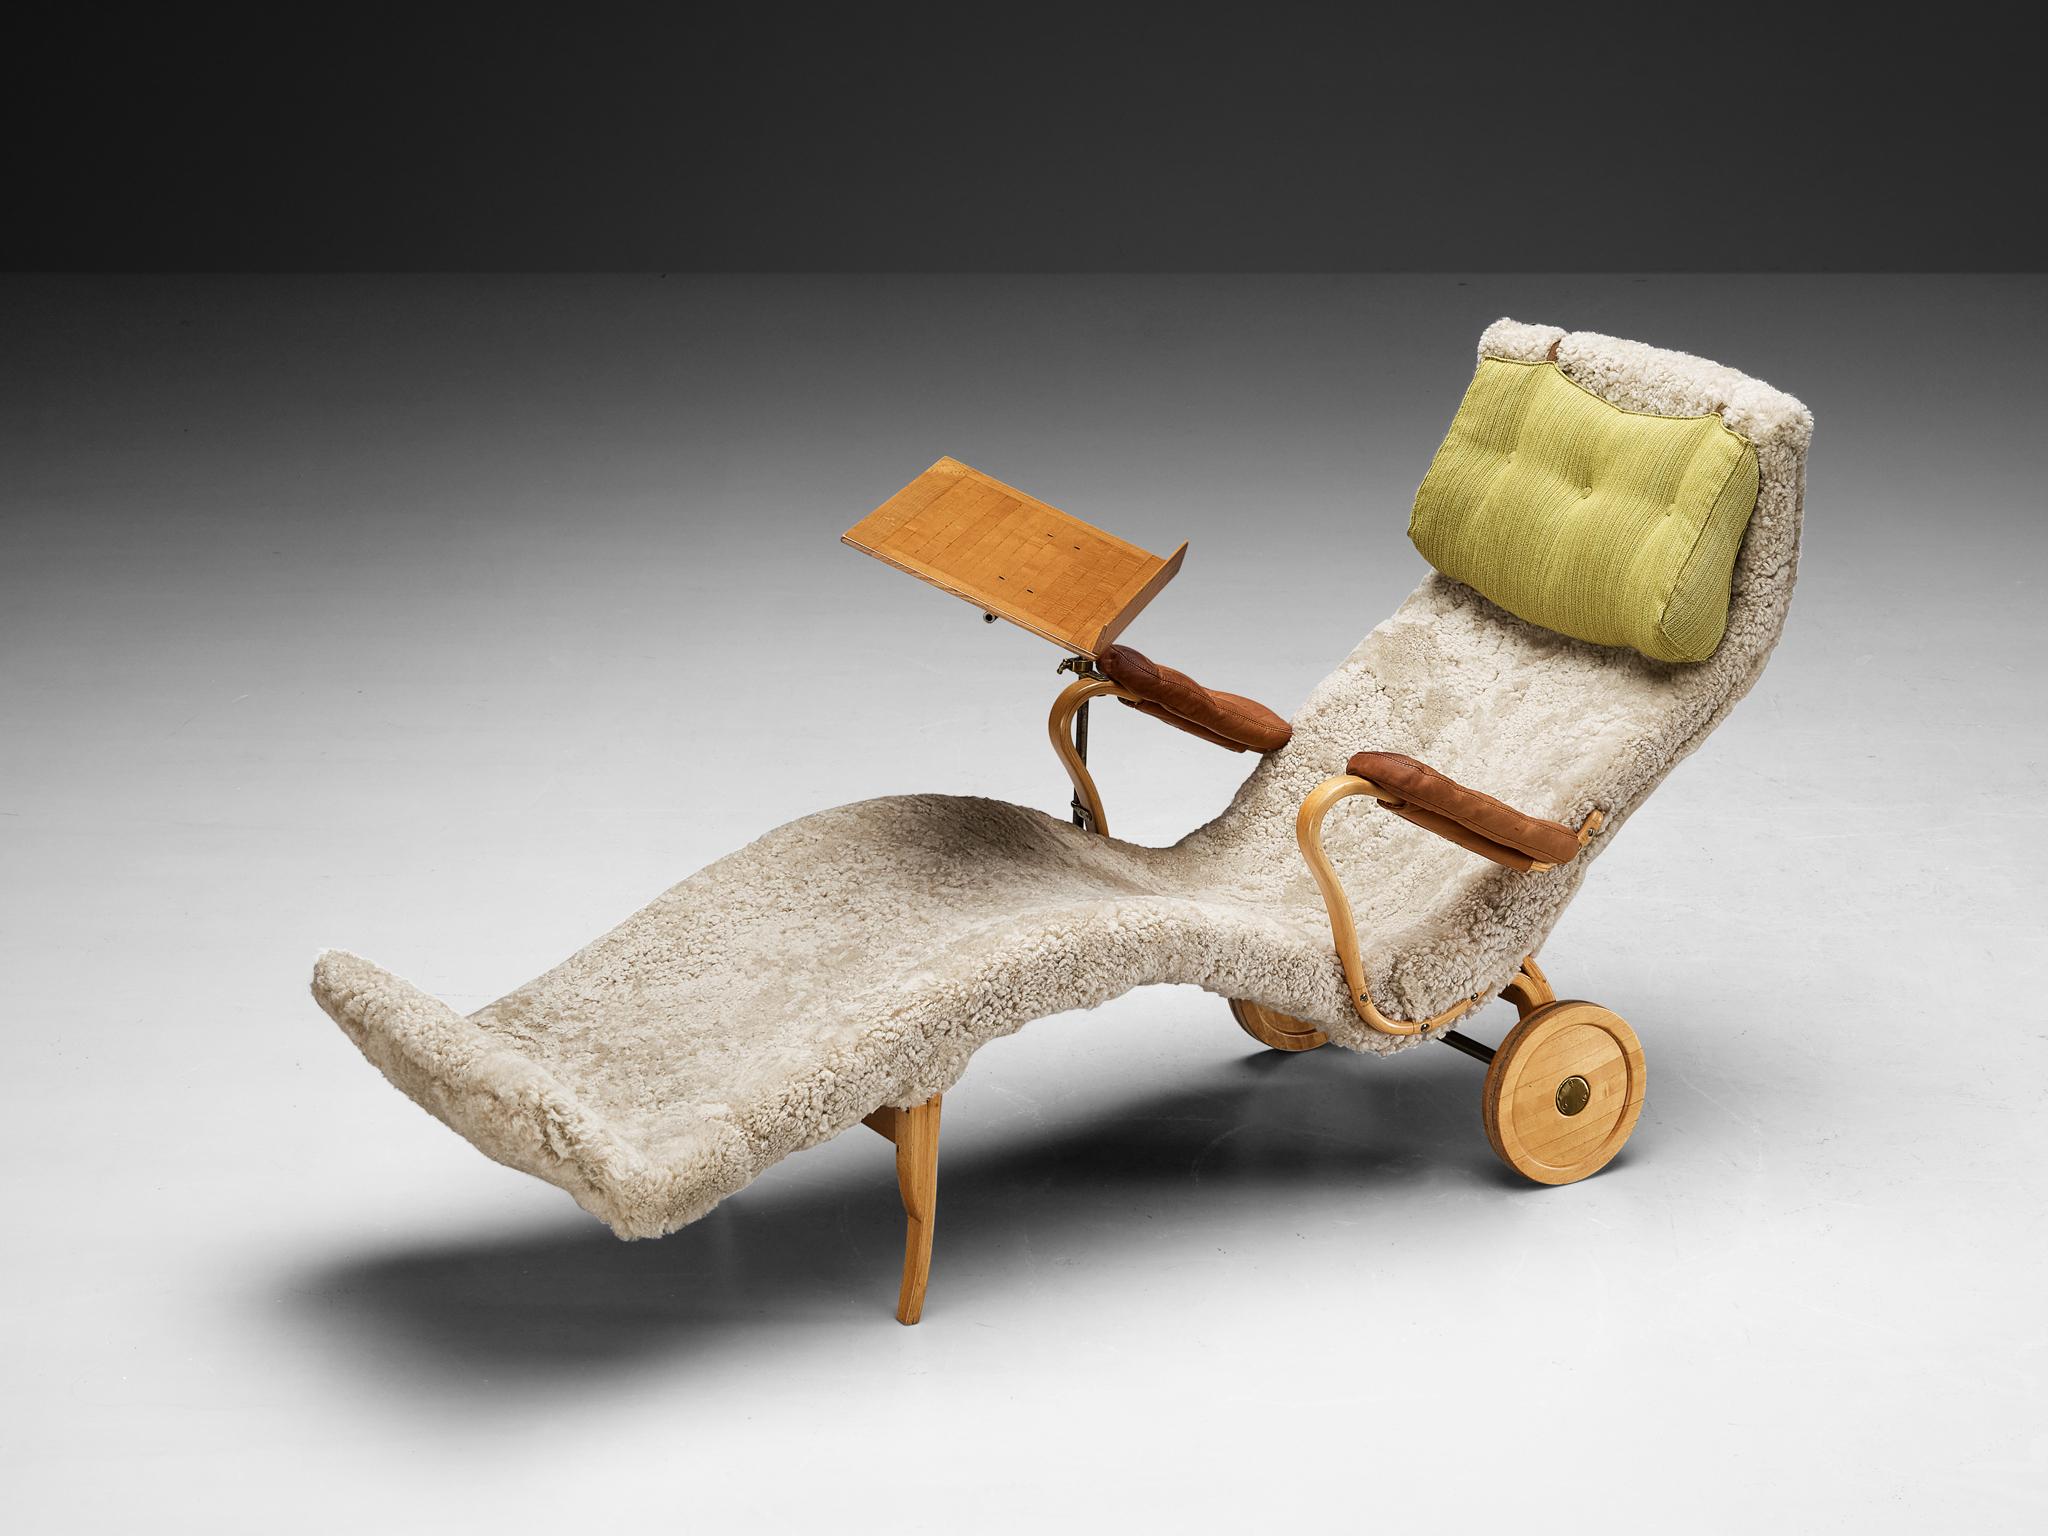 Bruno Mathsson pour Karl Mathsson, chaise longue 'Pernilla', peau de mouton, cuir, Beeche, tissu, laiton, Suède, design 1944

La chaise longue 